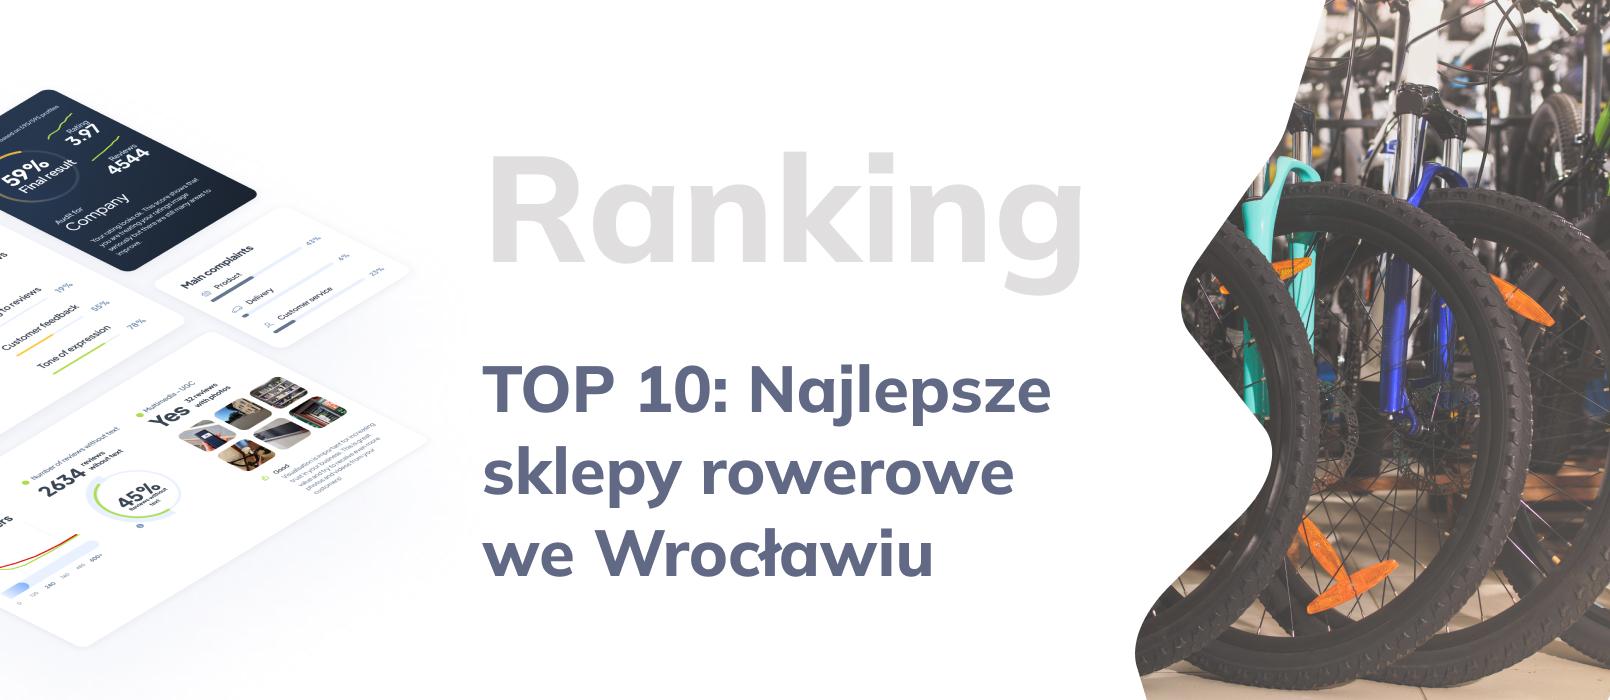 TOP 10: Najlepsze sklepy rowerowe we Wrocławiu - ranking opinii klientów